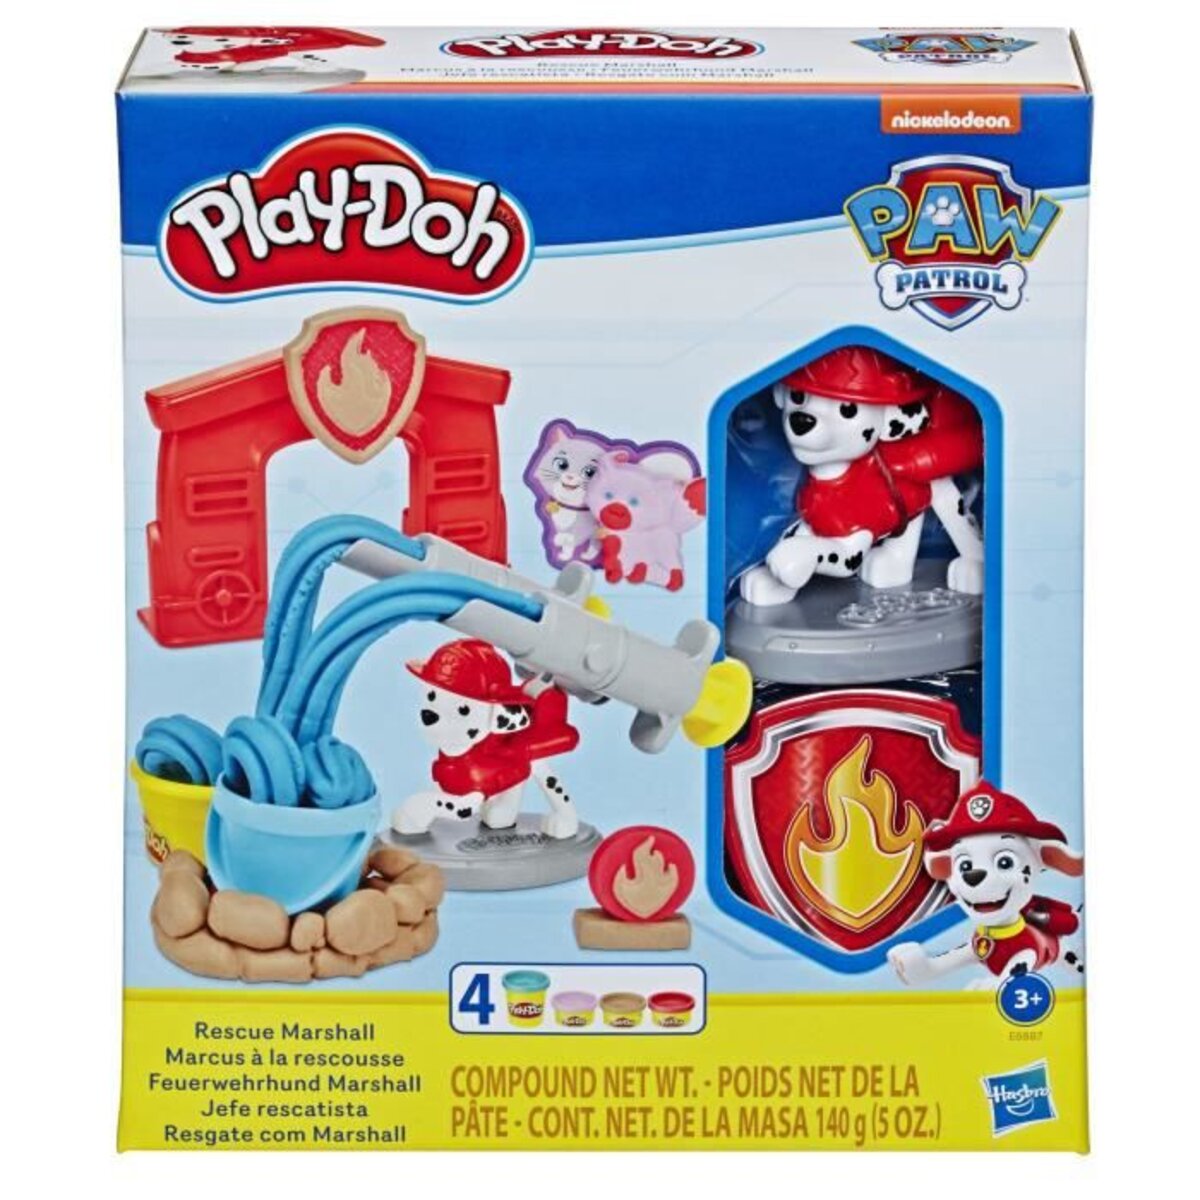 Play-doh - pat' patrouille - jouet marcus a la rescousse figurine et outils  avec 4 pots de pâte atoxique - La Poste